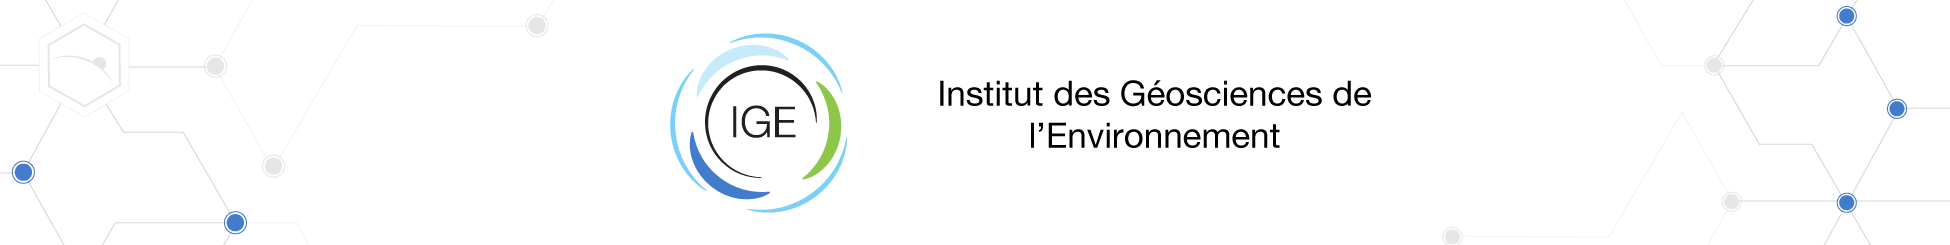 IGE - Institut des Géosciences de l'environnement